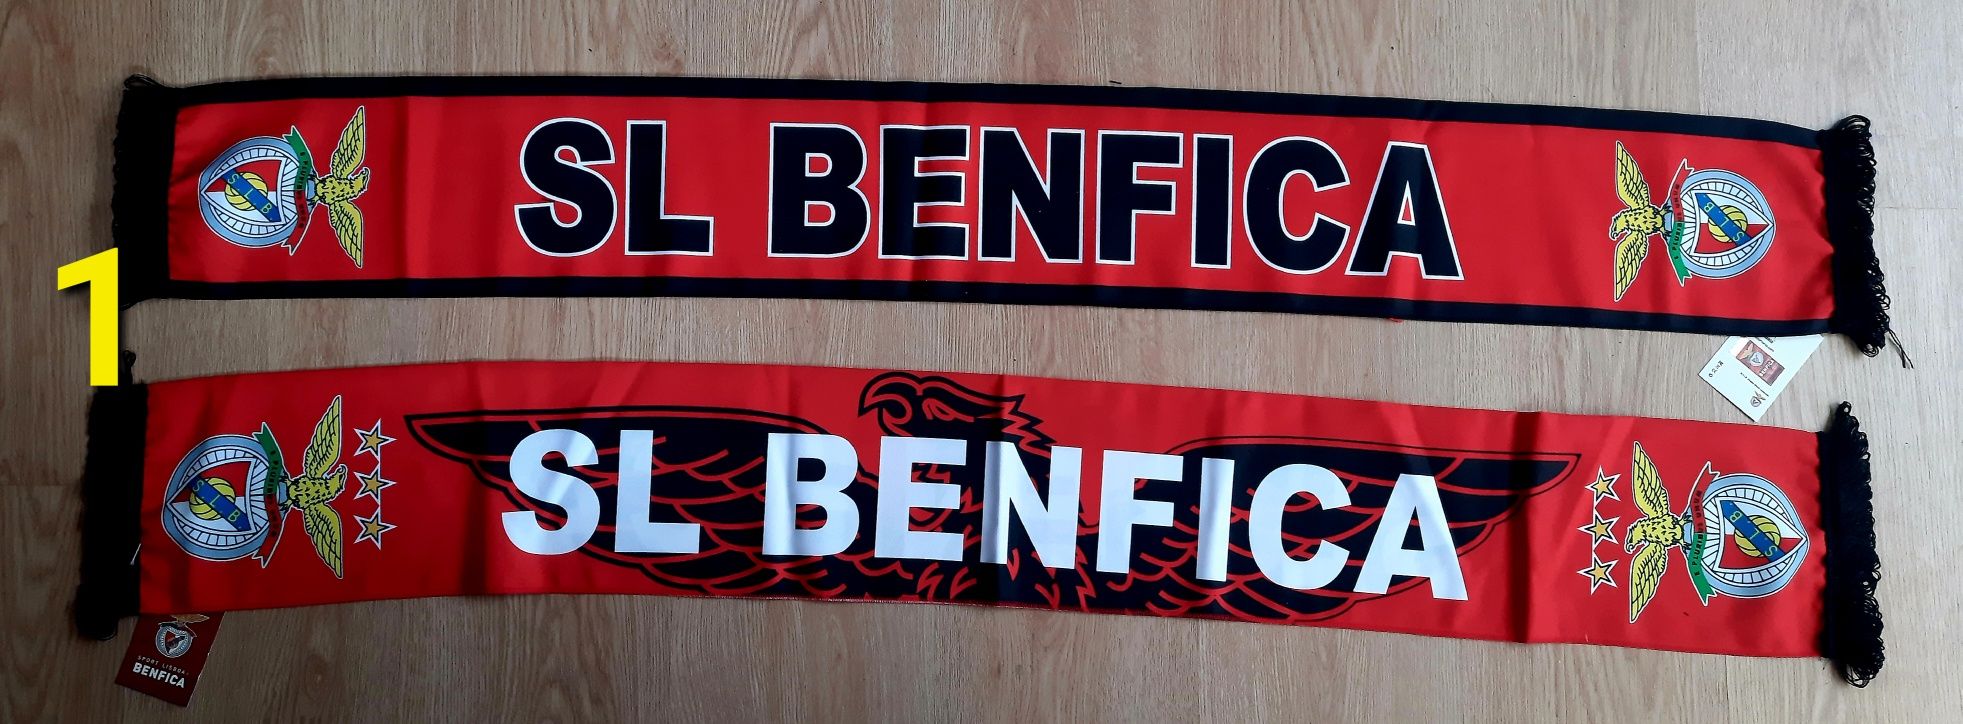 Benfica Benfica Benfica (2 cach) 9 euros